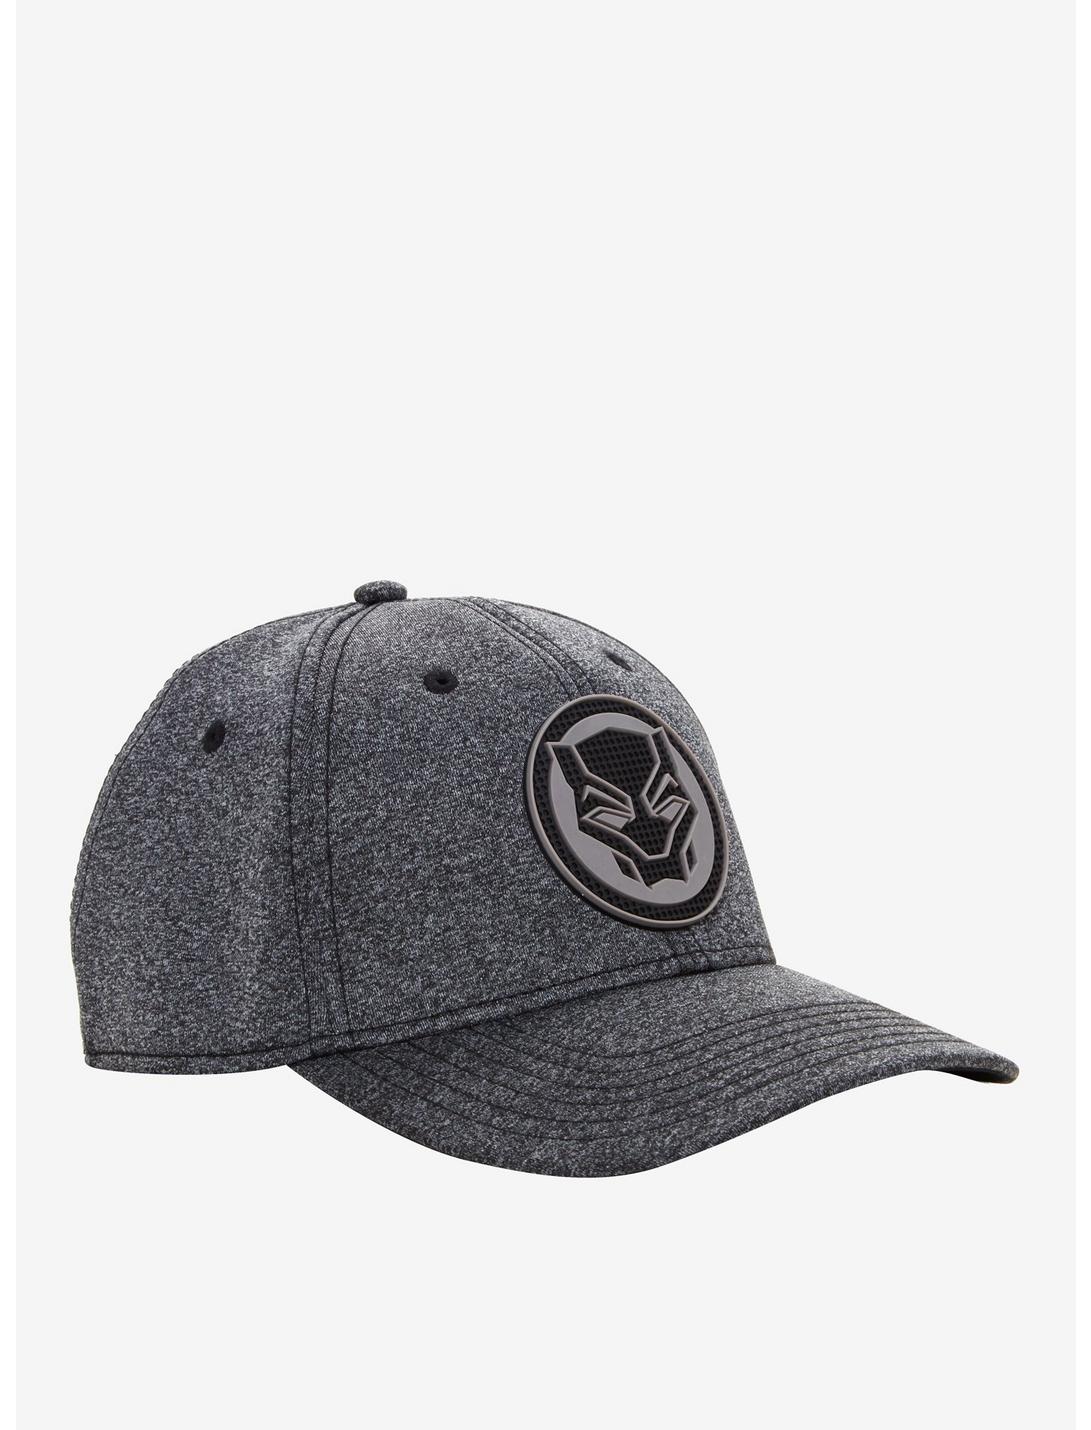 Marvel Black Panther Logo Flex Hat, , hi-res